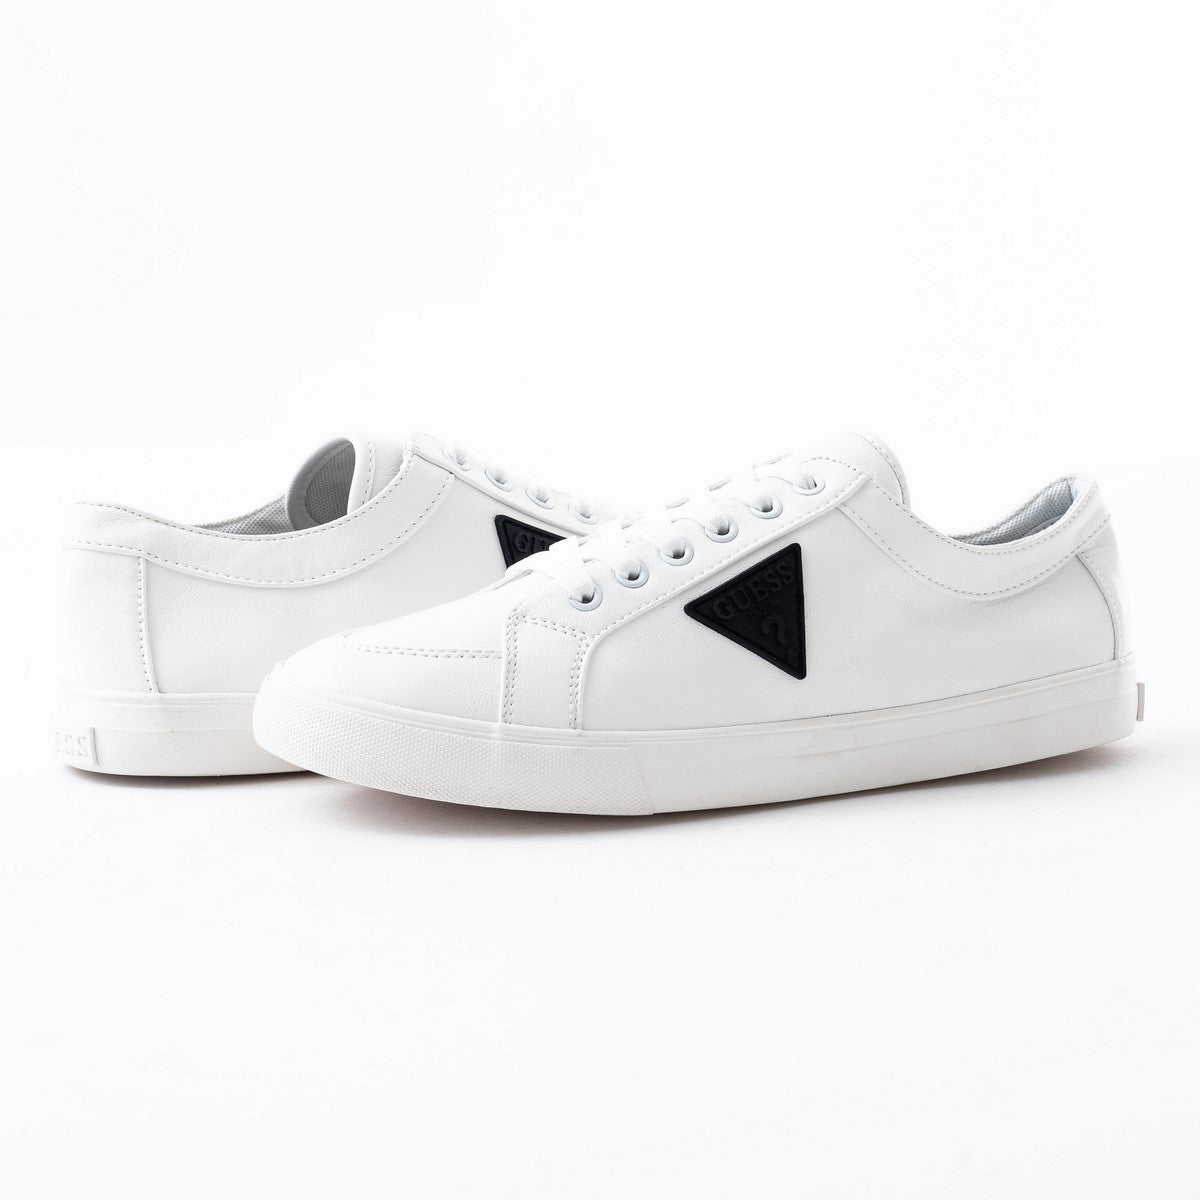 Guess Men Shoes Sneaker White #G006